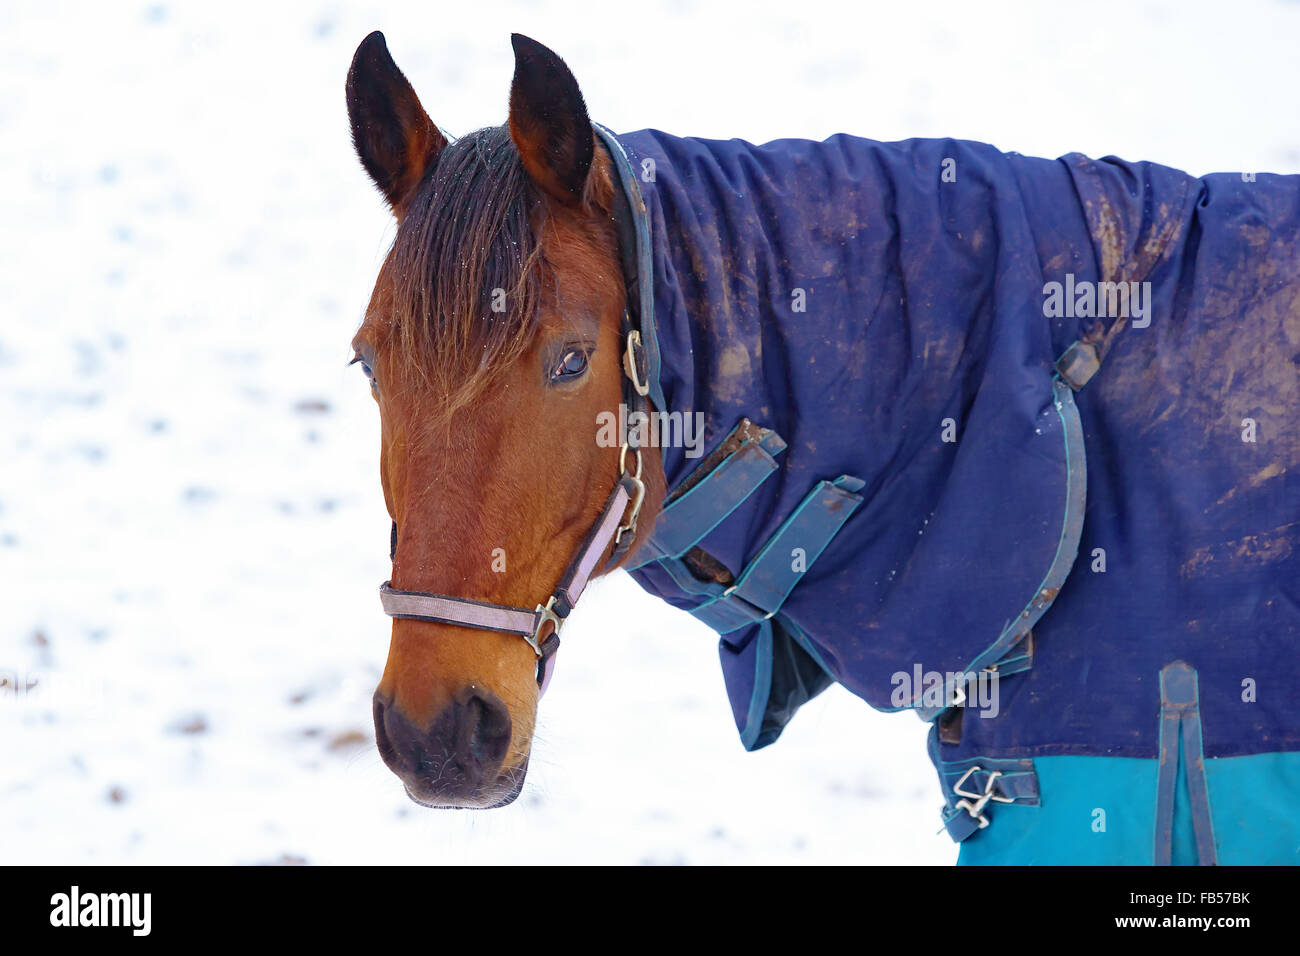 Portrait d'un cheval brun avec un sale bleu vêtements de protection. C'est l'hiver et quelques flocons sont bloqués dans la crinière. Dans la neige Banque D'Images